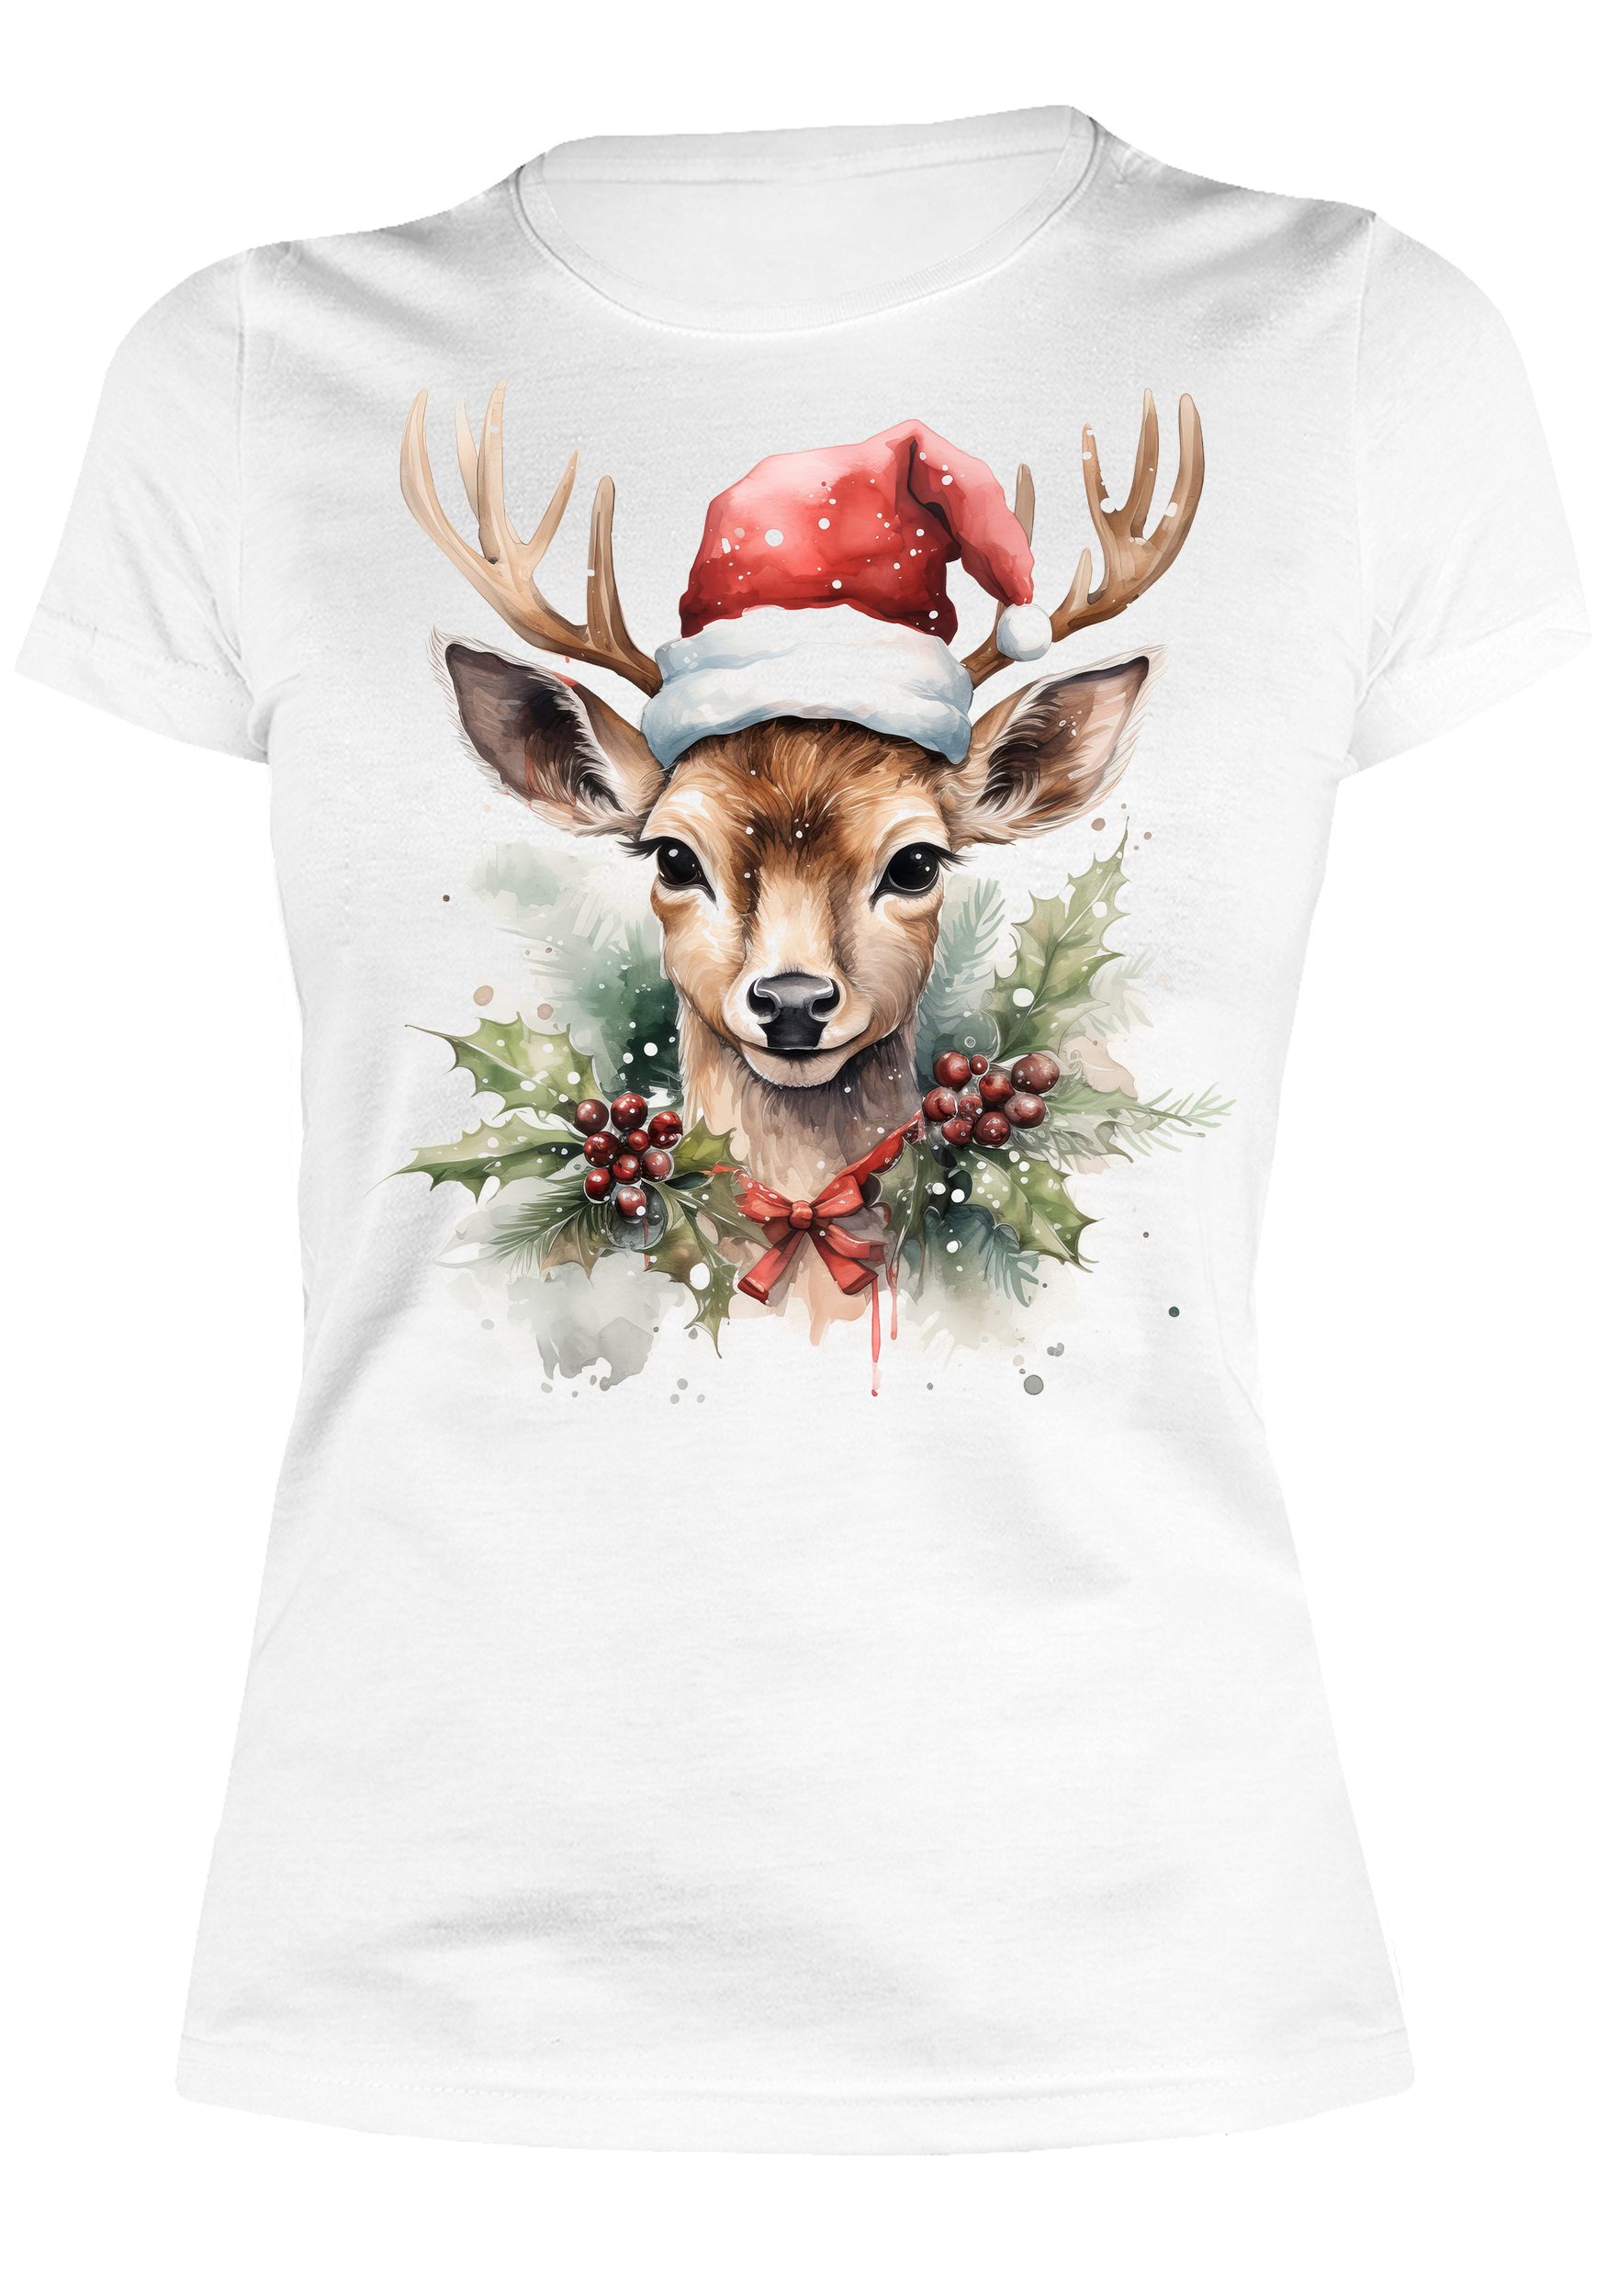 Sonderverkauf Art & Detail Shirt T-Shirt Geschenk, Damen Weihnachtsmütze für Weihnachten Design mit Reh Weihnachten, Reh